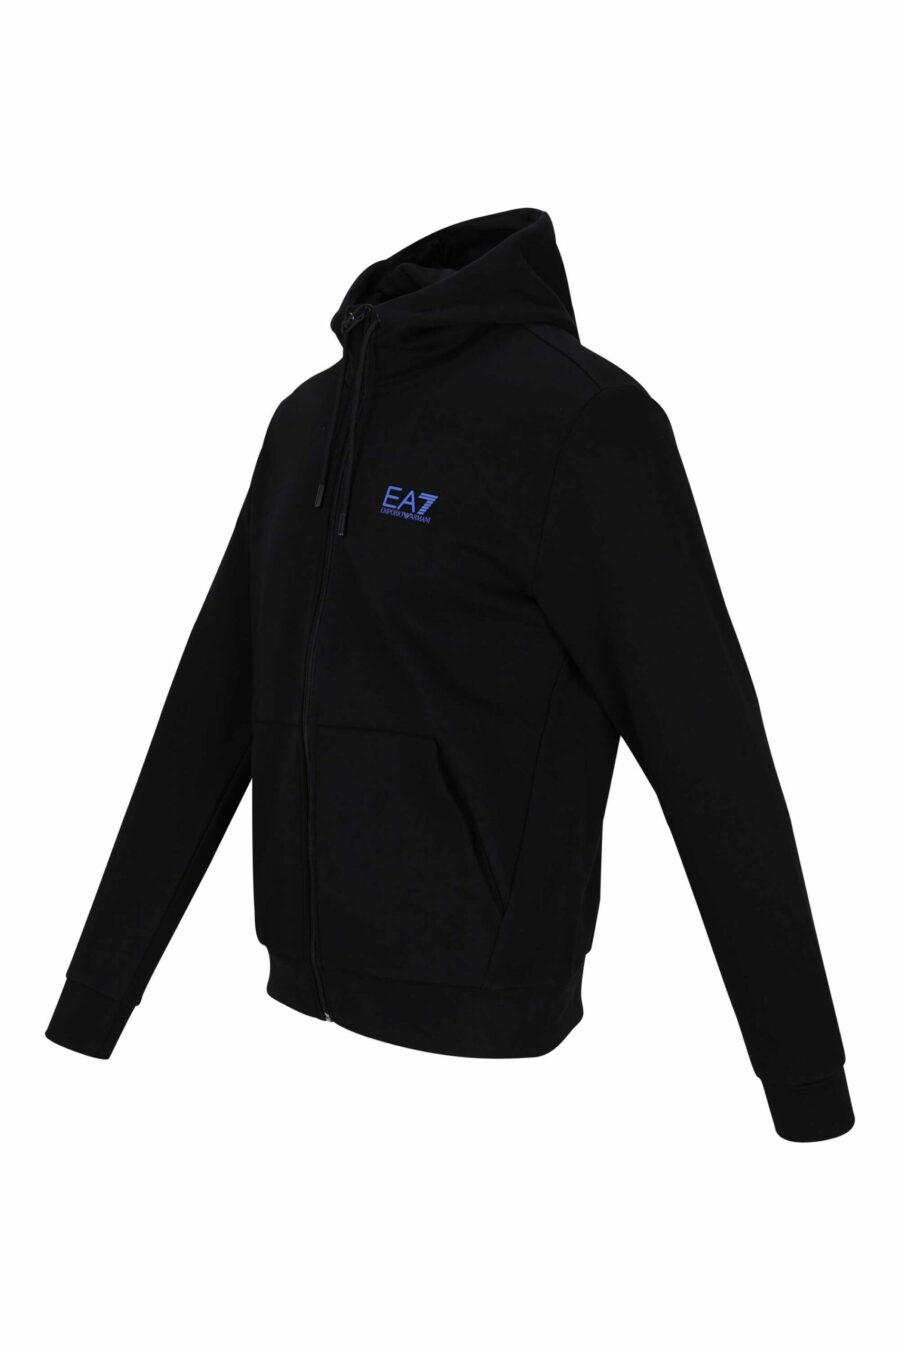 Sweat zippé noir avec capuche et minilogue "lux identity" - 8057767624941 échelle 1